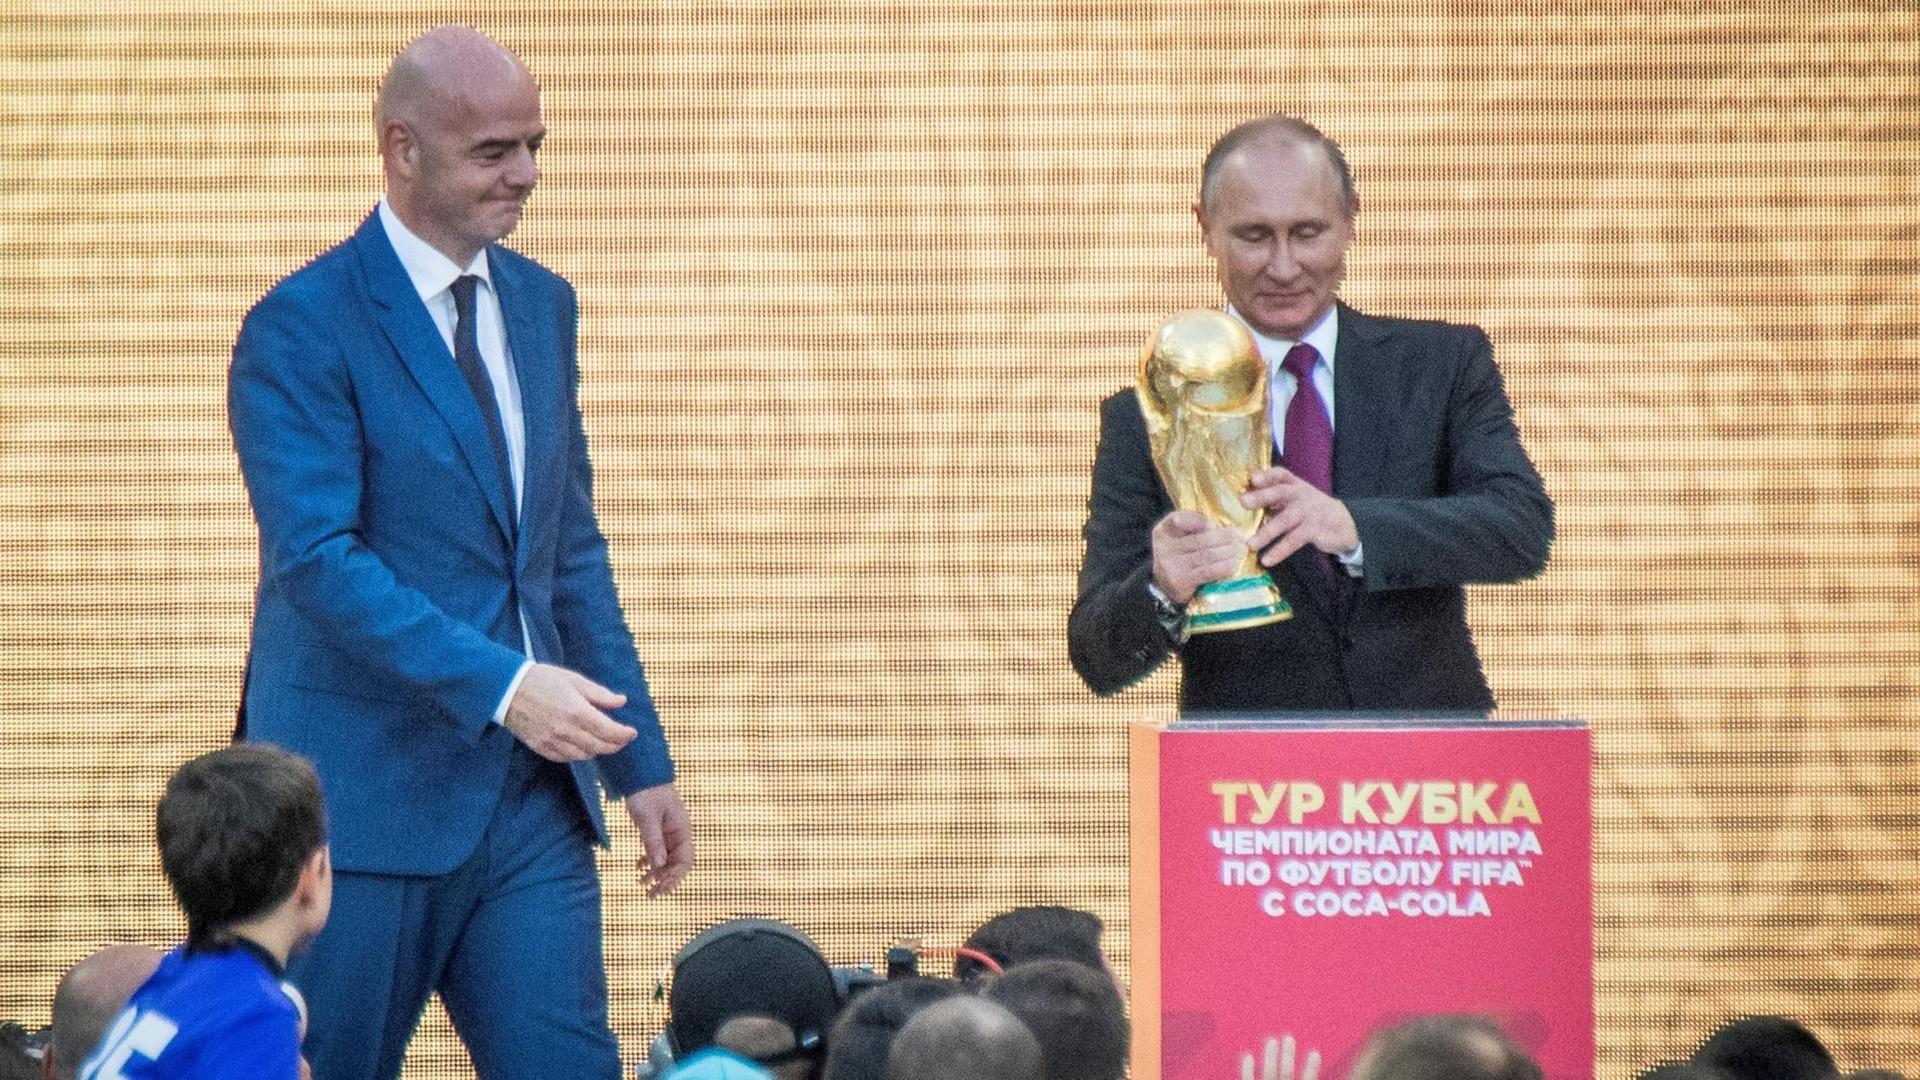 Die Fußball-WM 2018 war in Russland. Im Bild ist der FIFA-Chef Gianni Infantino. Russlands Präsident Wladimir Putin hält den WM-Pokal.